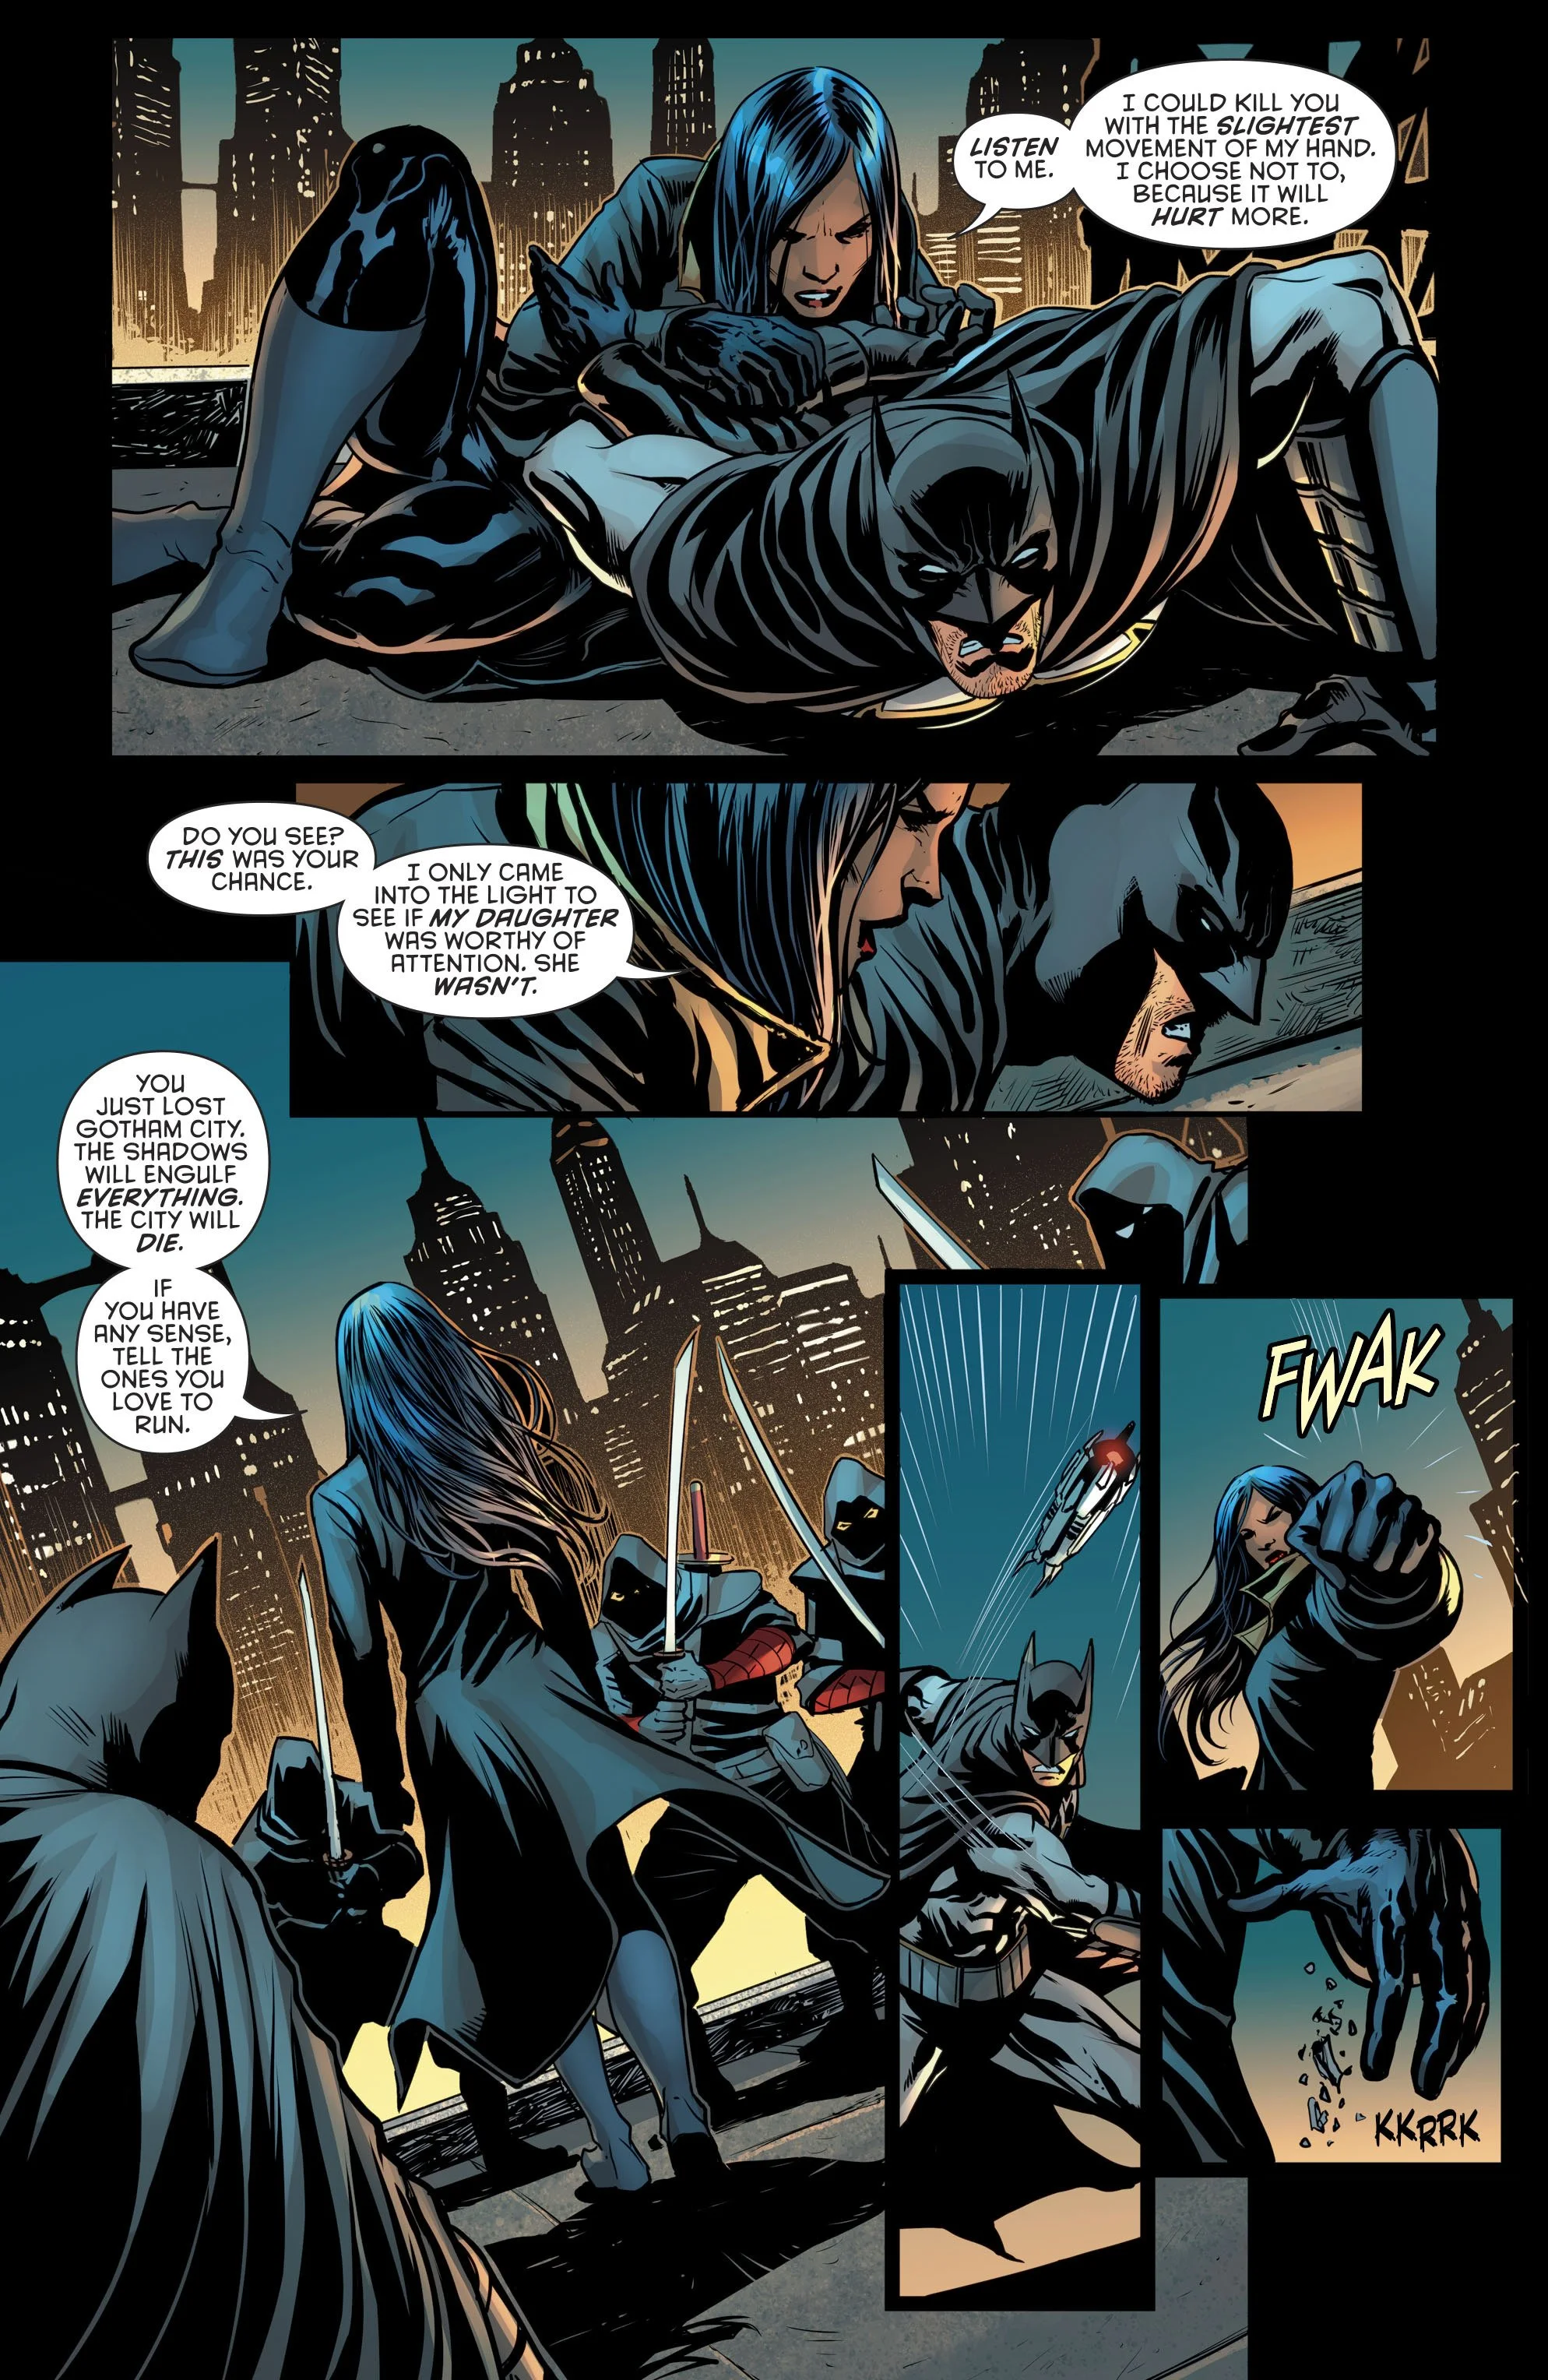 Бэтмен оказался в непростом положении: в Готэме хаос, а он бессилен - фото 3